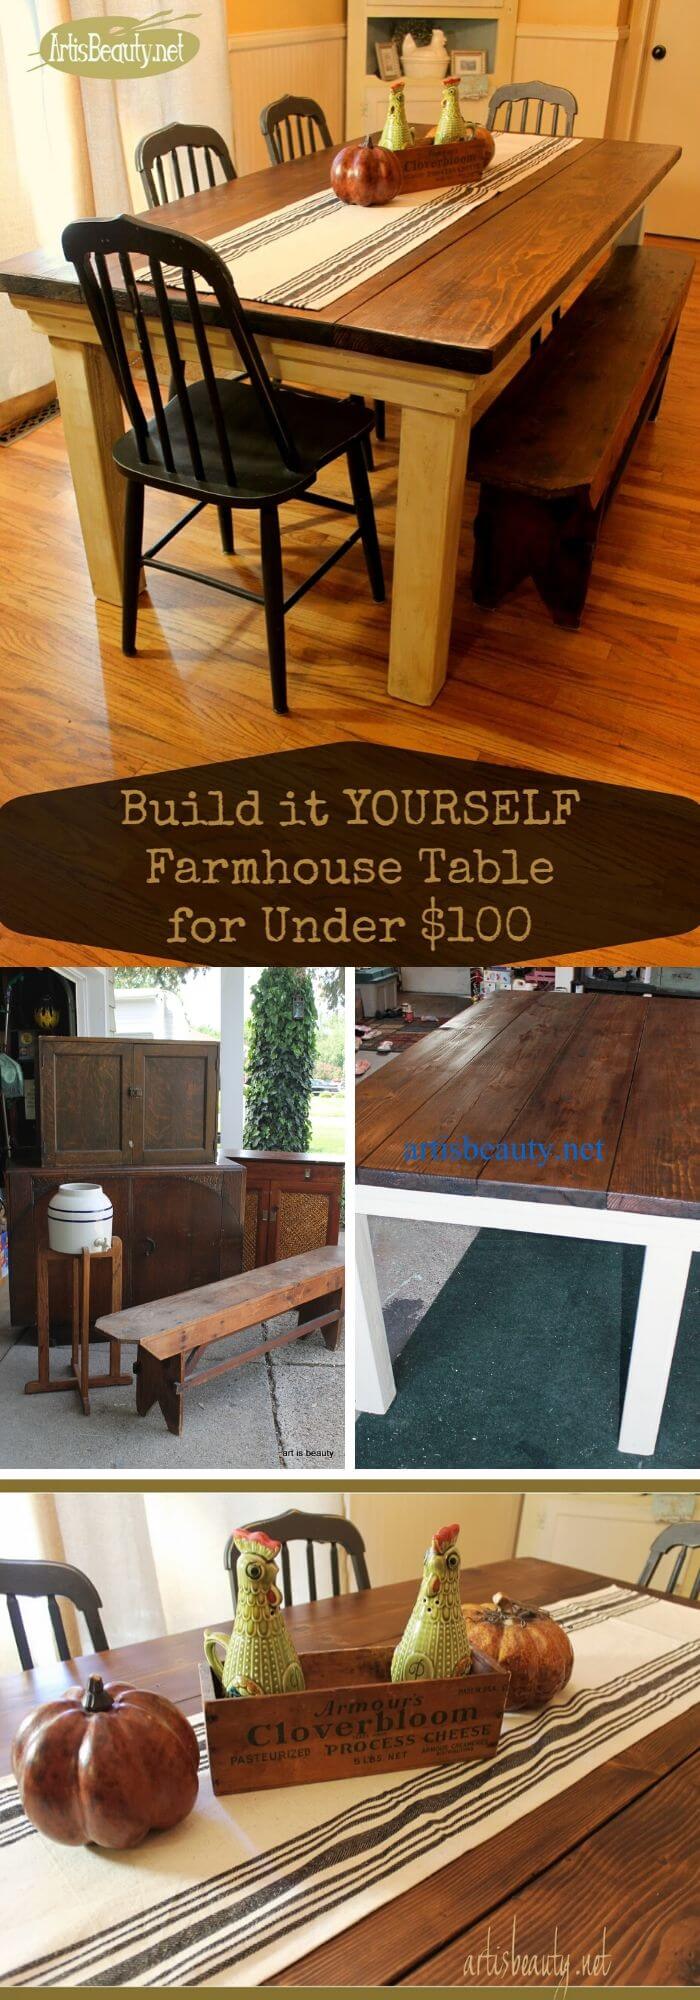 9 farmhouse furniture decor ideas